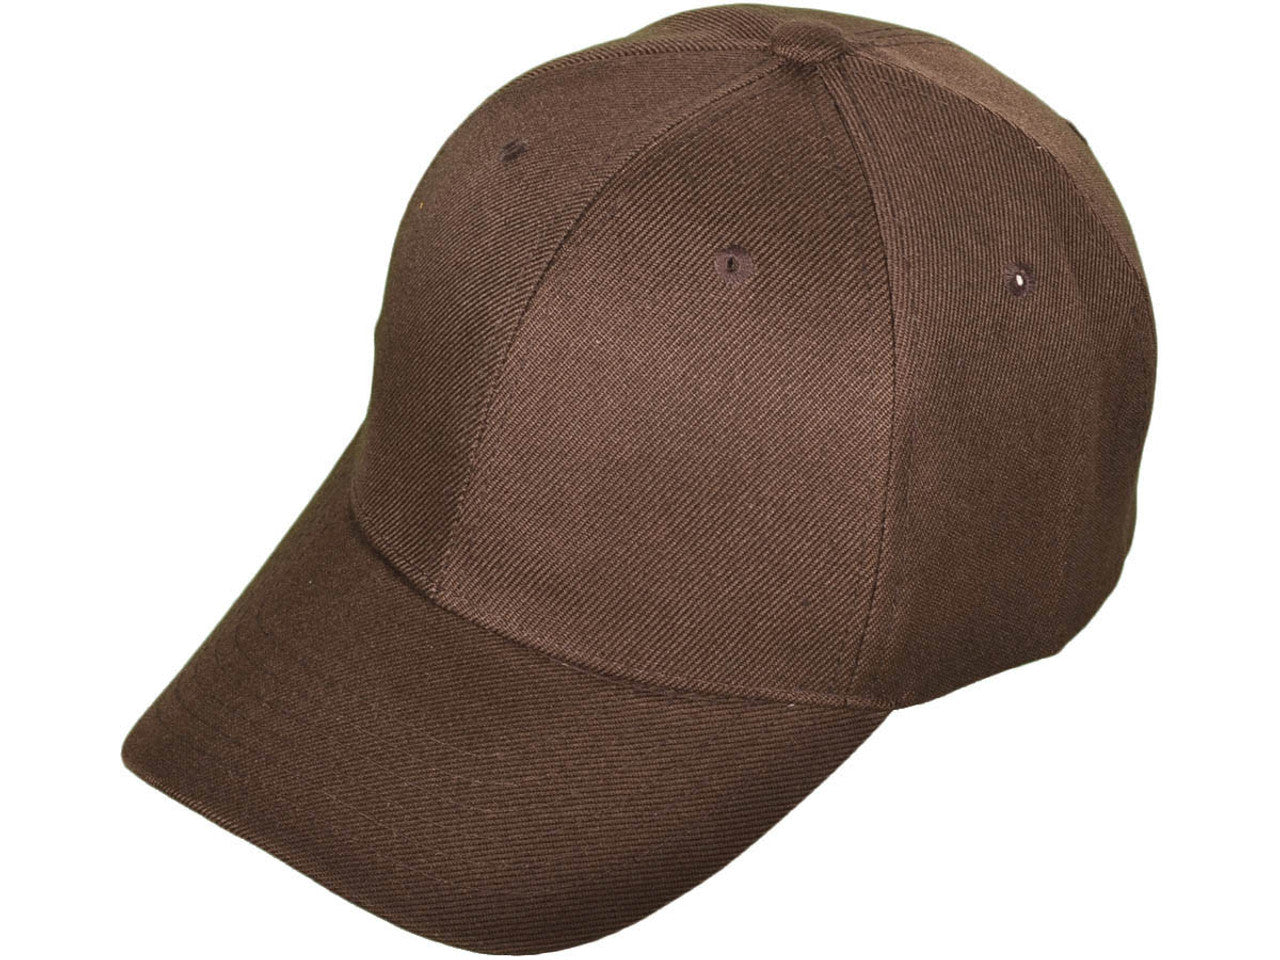 Custom Hats & Caps